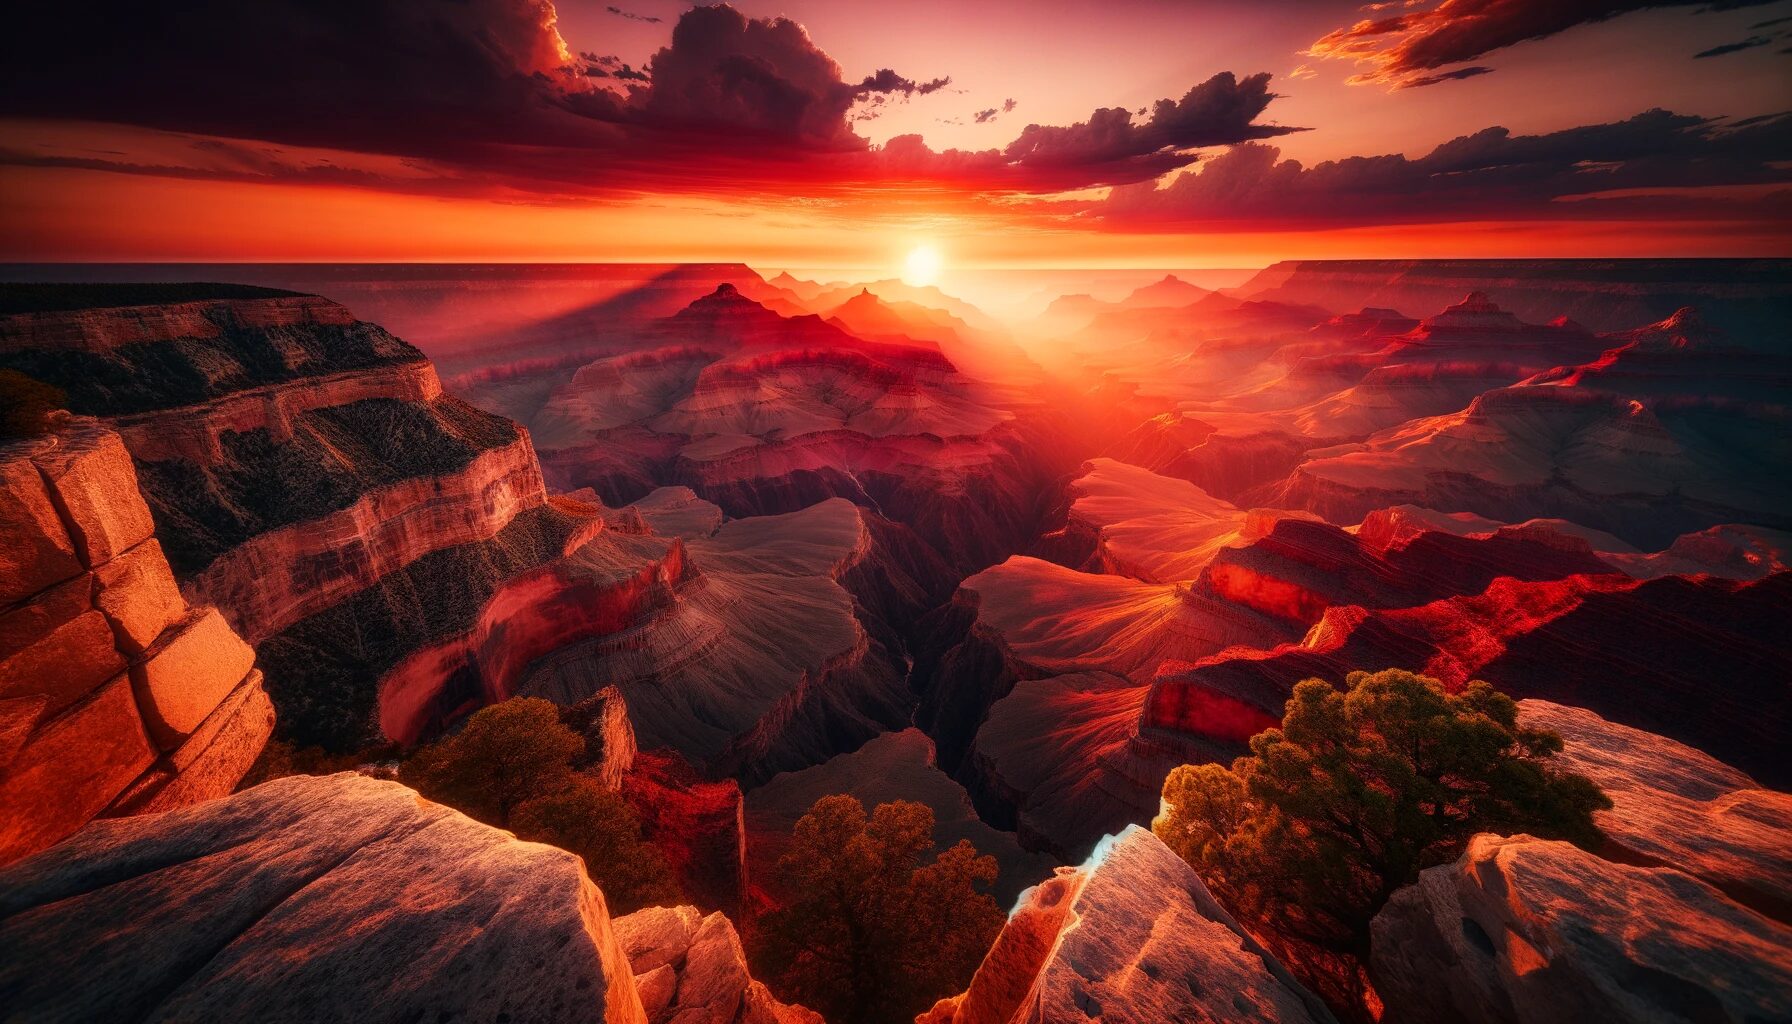 夕日に染まるグランドキャニオンの壮大な景色 - 無料写真素材